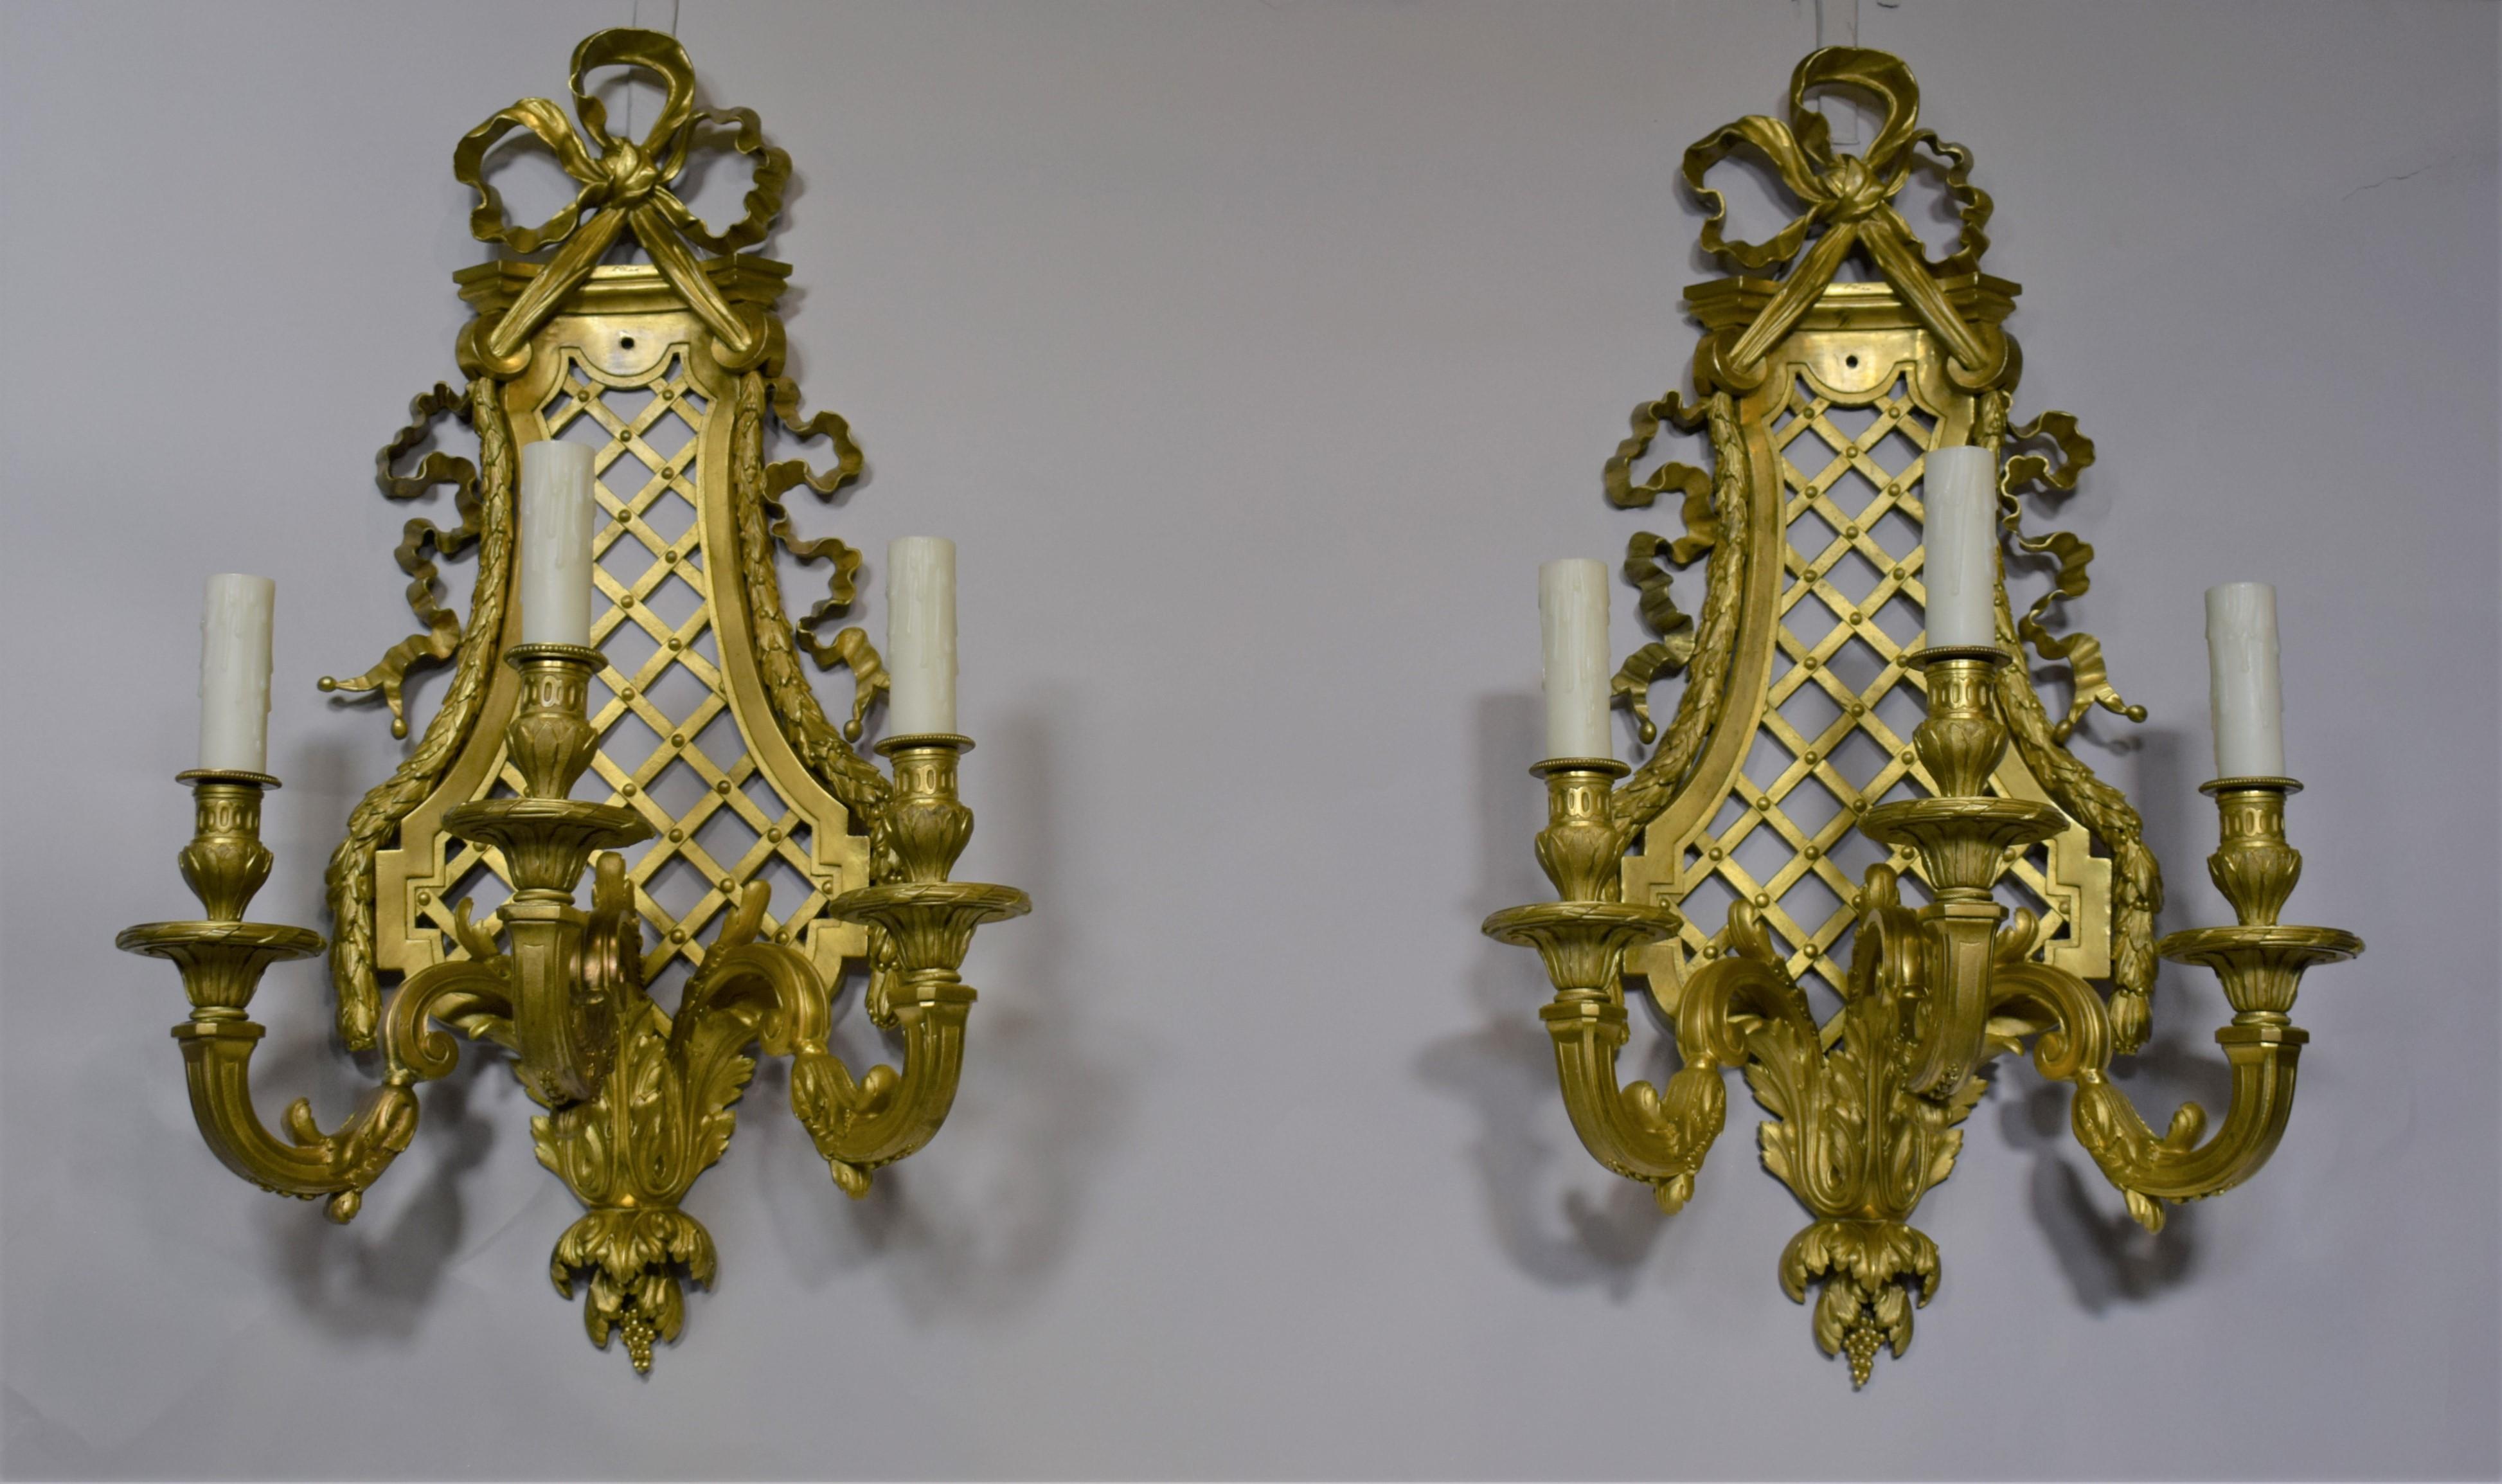 Paar vergoldete Bronzewandleuchter im Stil Louis XVI von Henri Vian. Exquisite Bänder und Spalierarbeiten. Frankreich, um 1900.
Abmessungen:
CW4947.